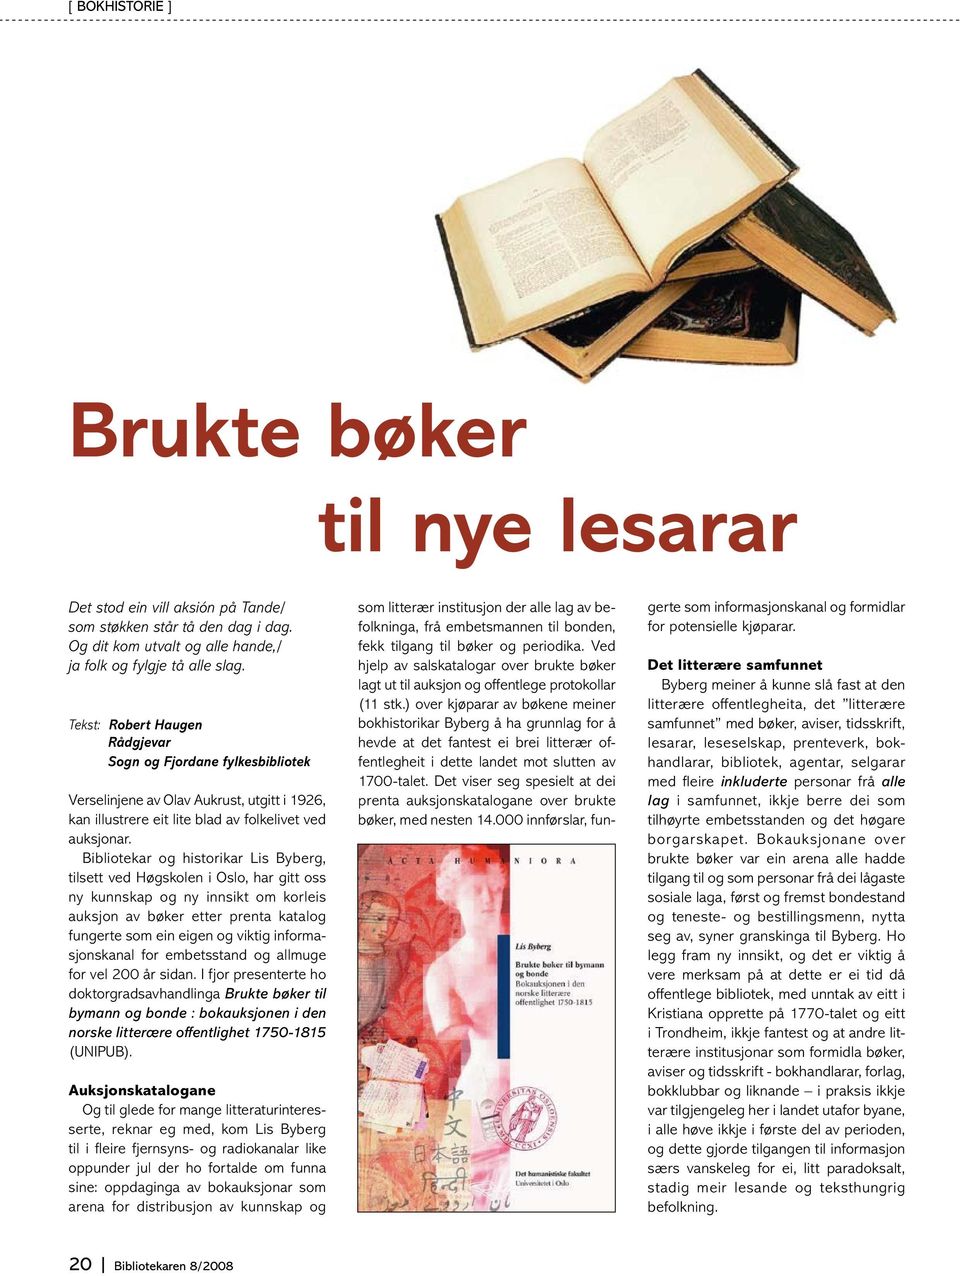 Bibliotekar og historikar Lis Byberg, tilsett ved Høgskolen i Oslo, har gitt oss ny kunnskap og ny innsikt om korleis auksjon av bøker etter prenta katalog fungerte som ein eigen og viktig